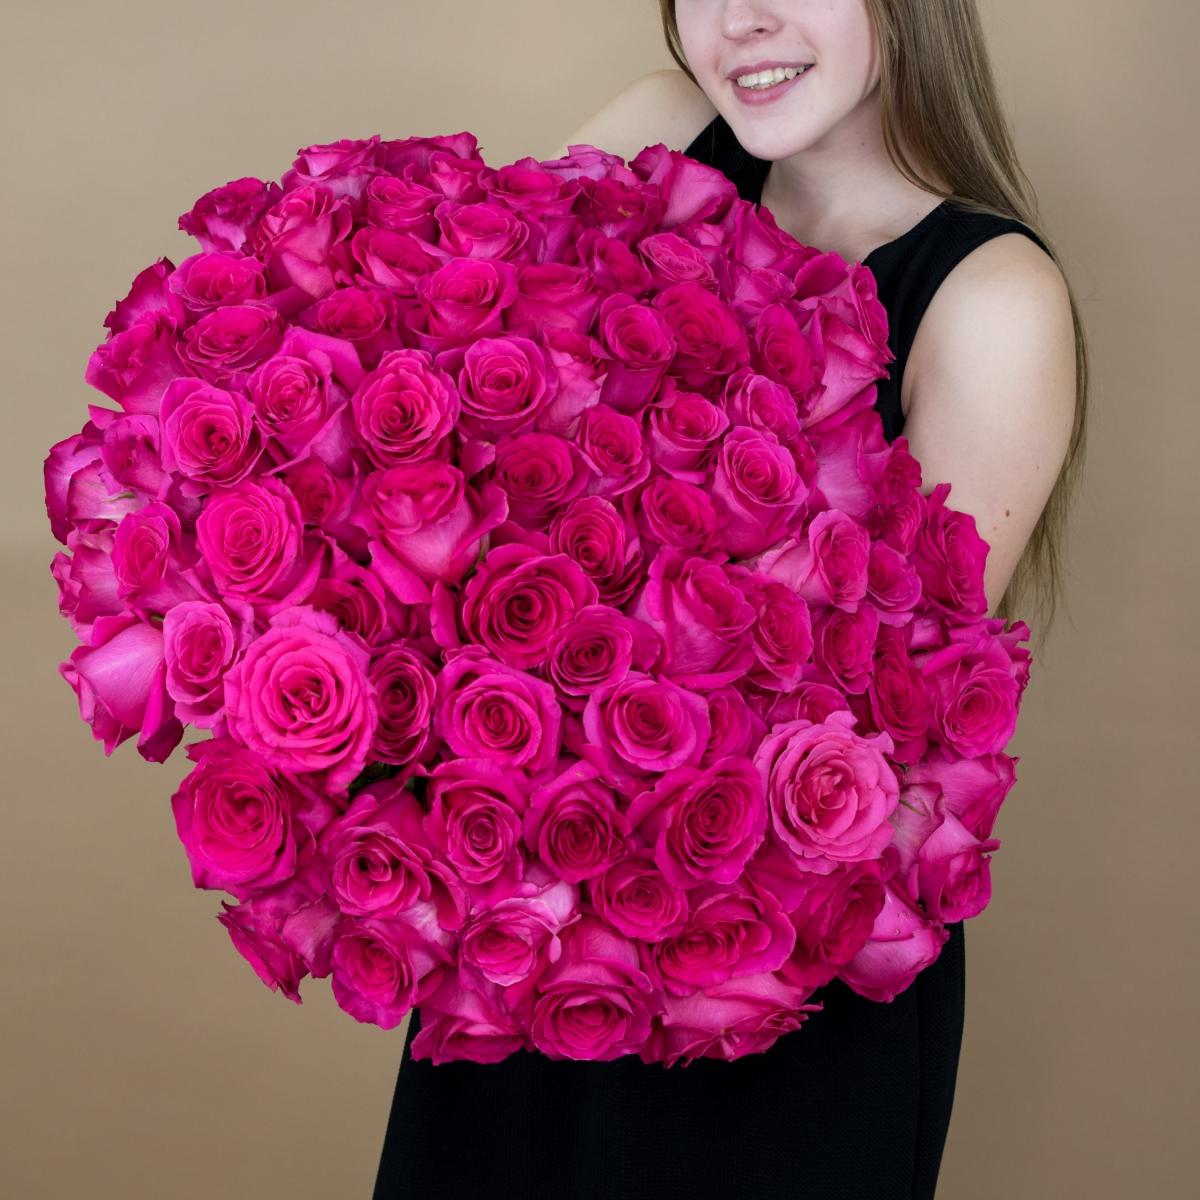 Букет из розовых роз 75 шт. (40 см) (код  80850)